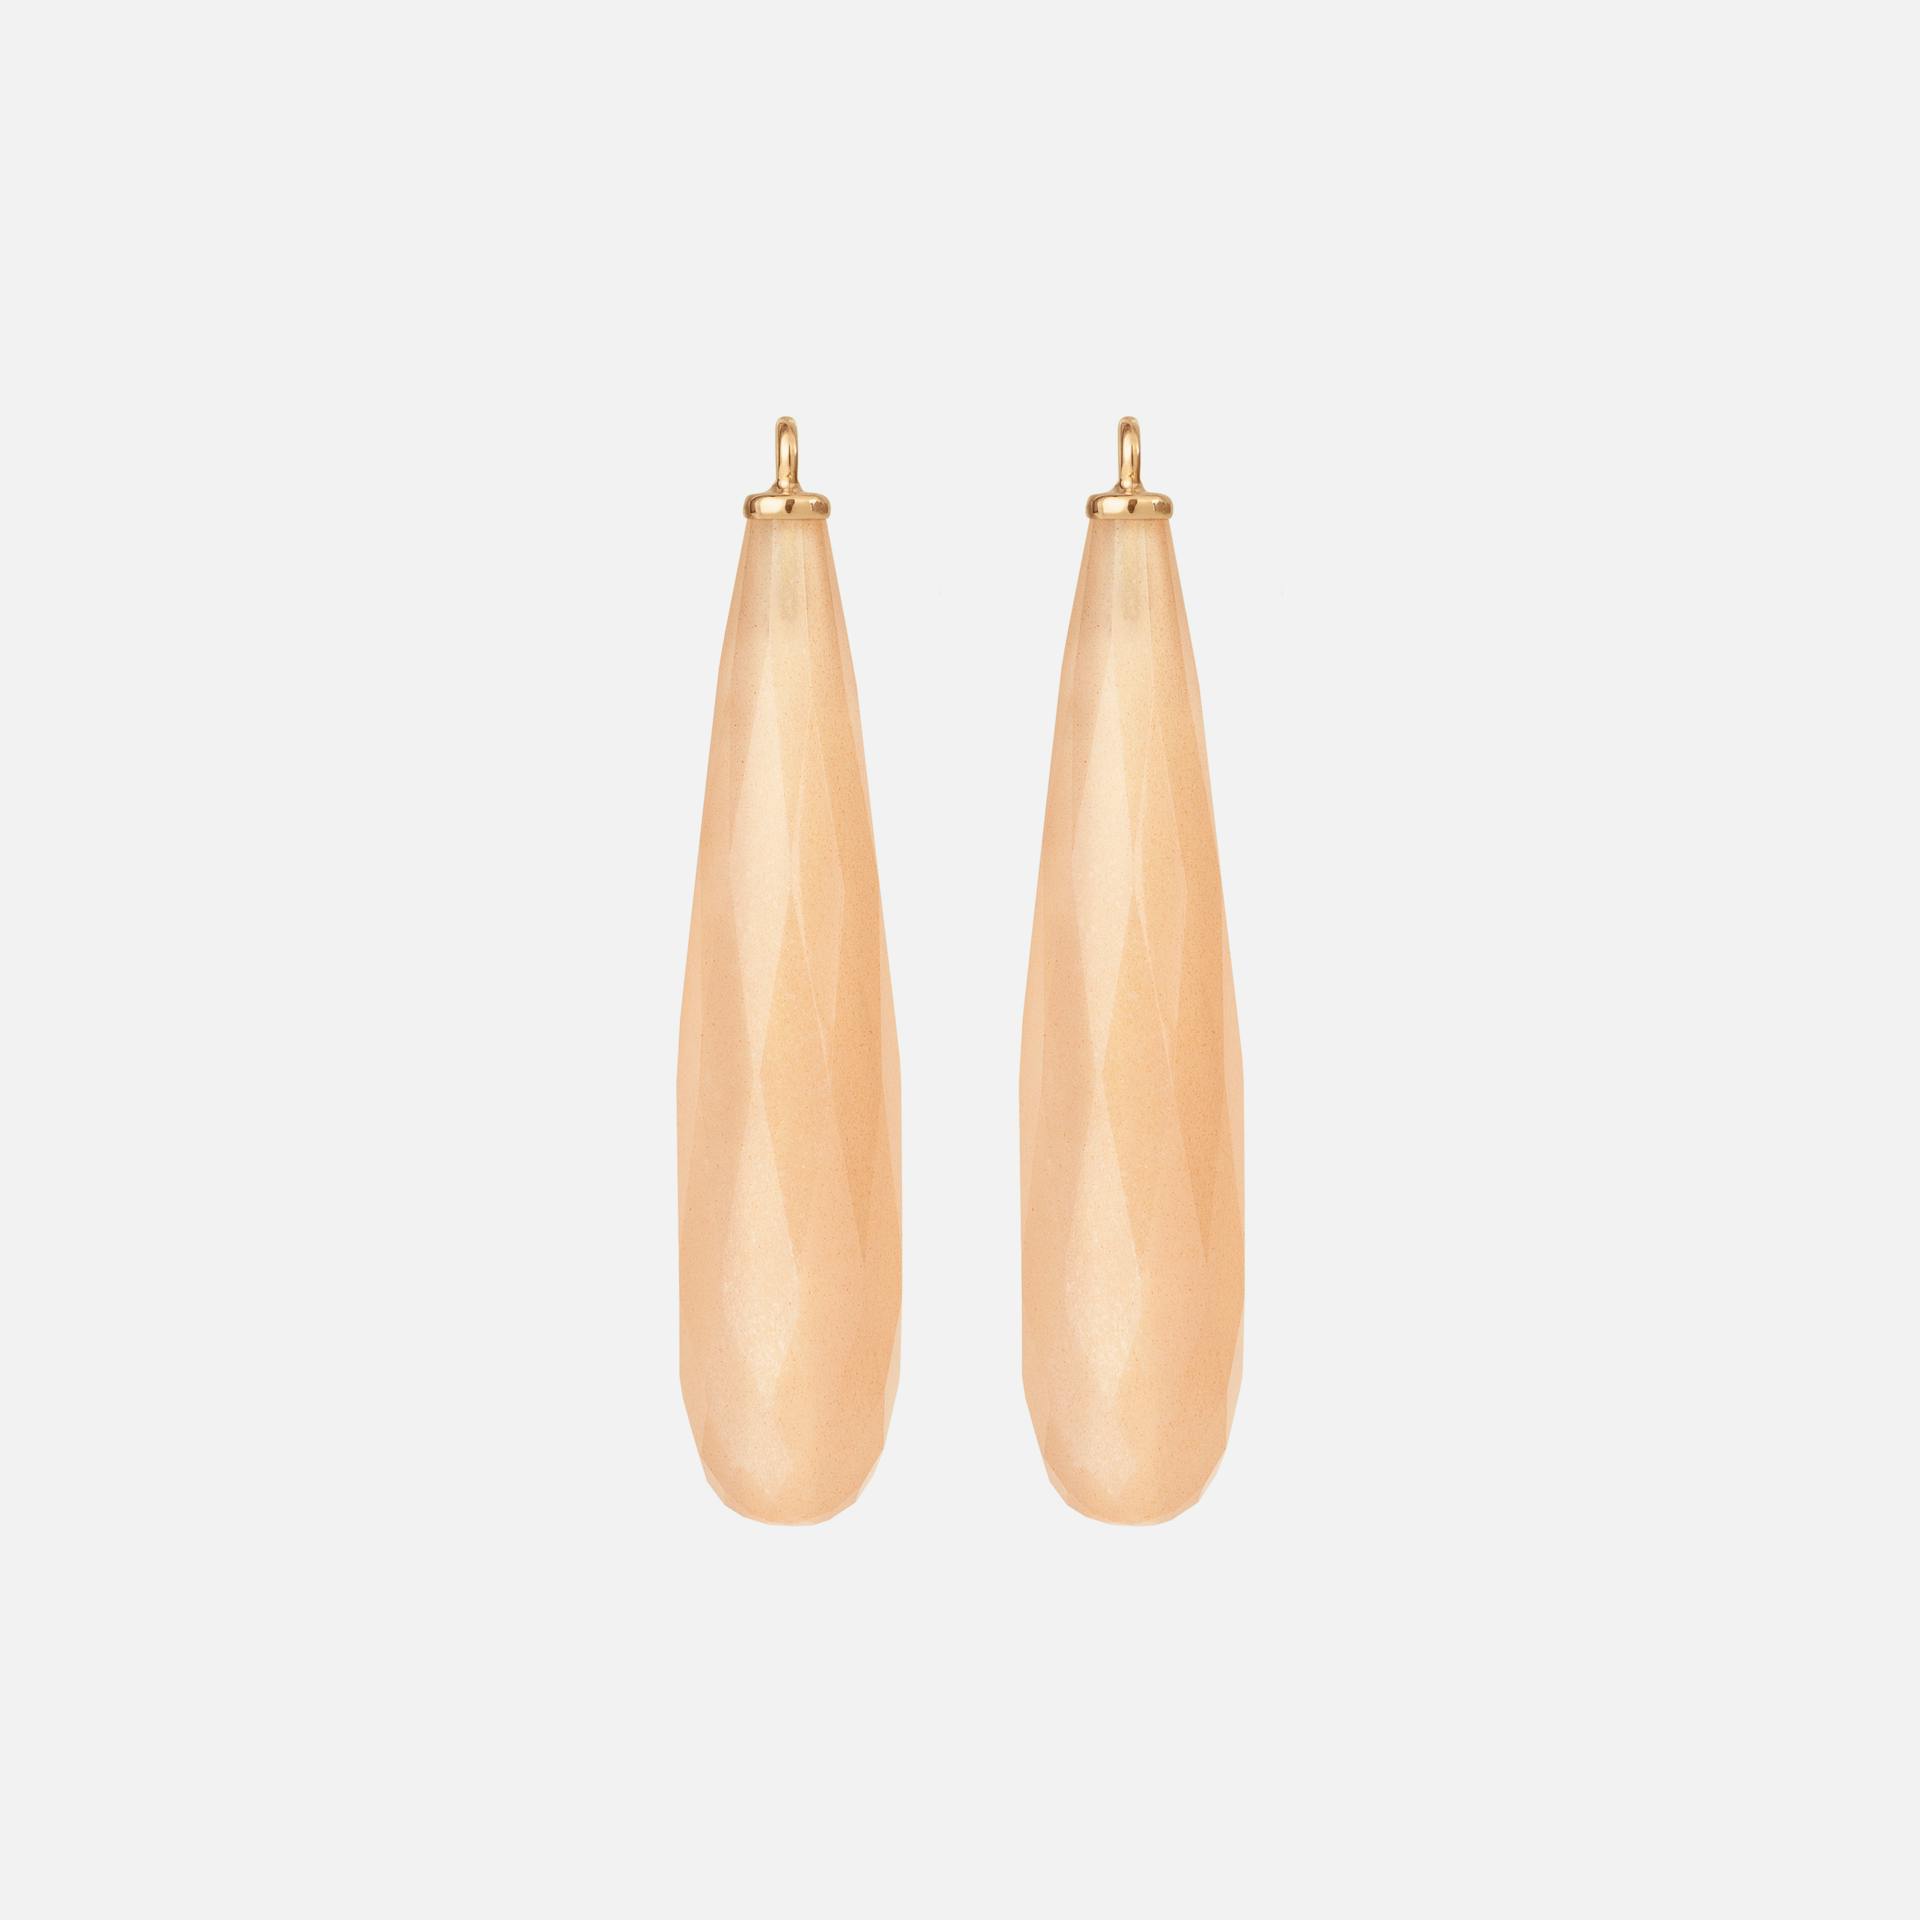 Earring Pendants in 18K Yellow Gold with Blush Moonstone |  Ole Lynggaard Copenhagen 